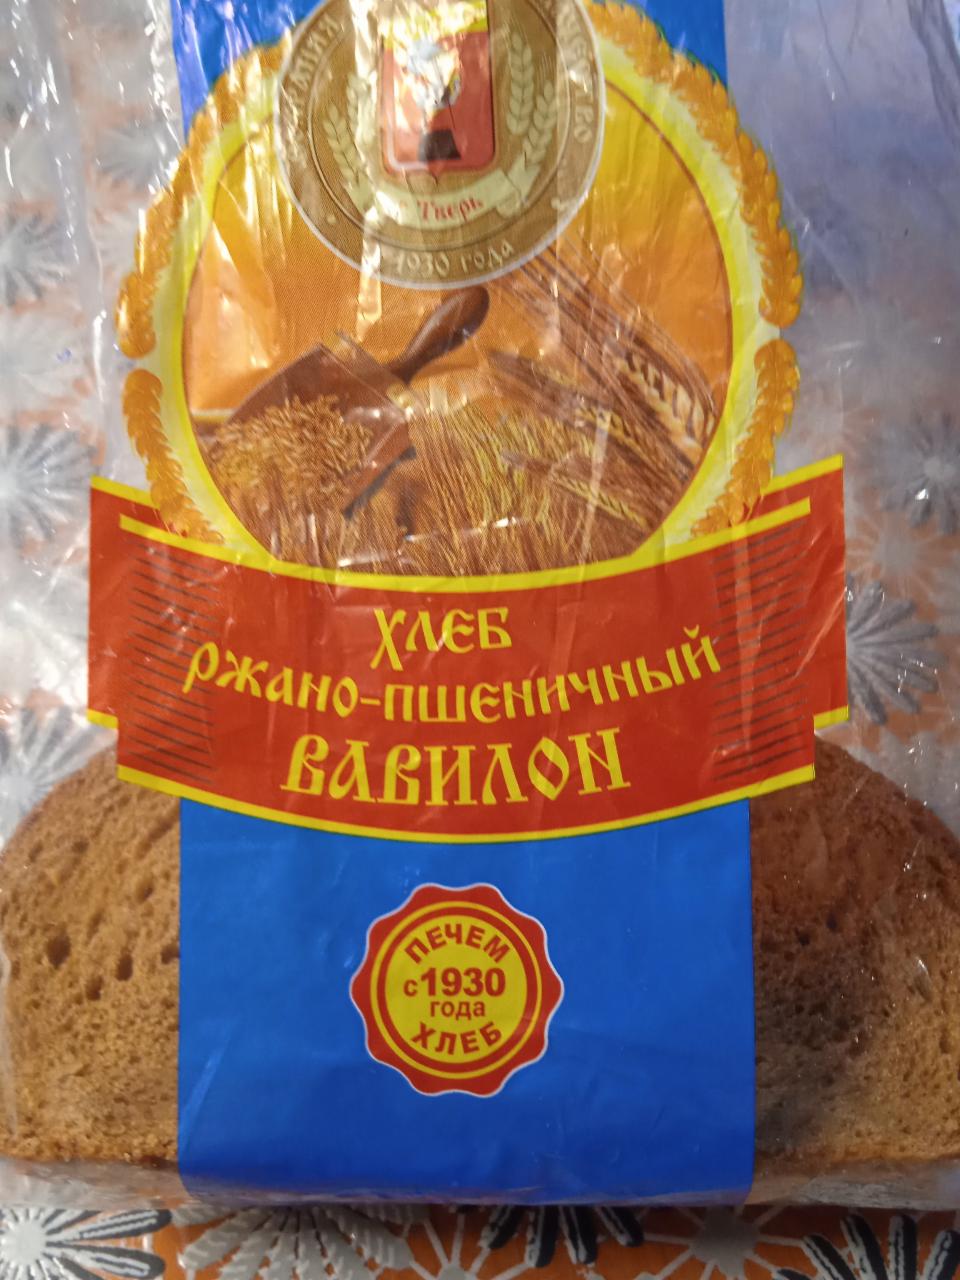 Фото - Хлеб ржано-пшеничный Вавилон ЗАО Хлеб Тверь